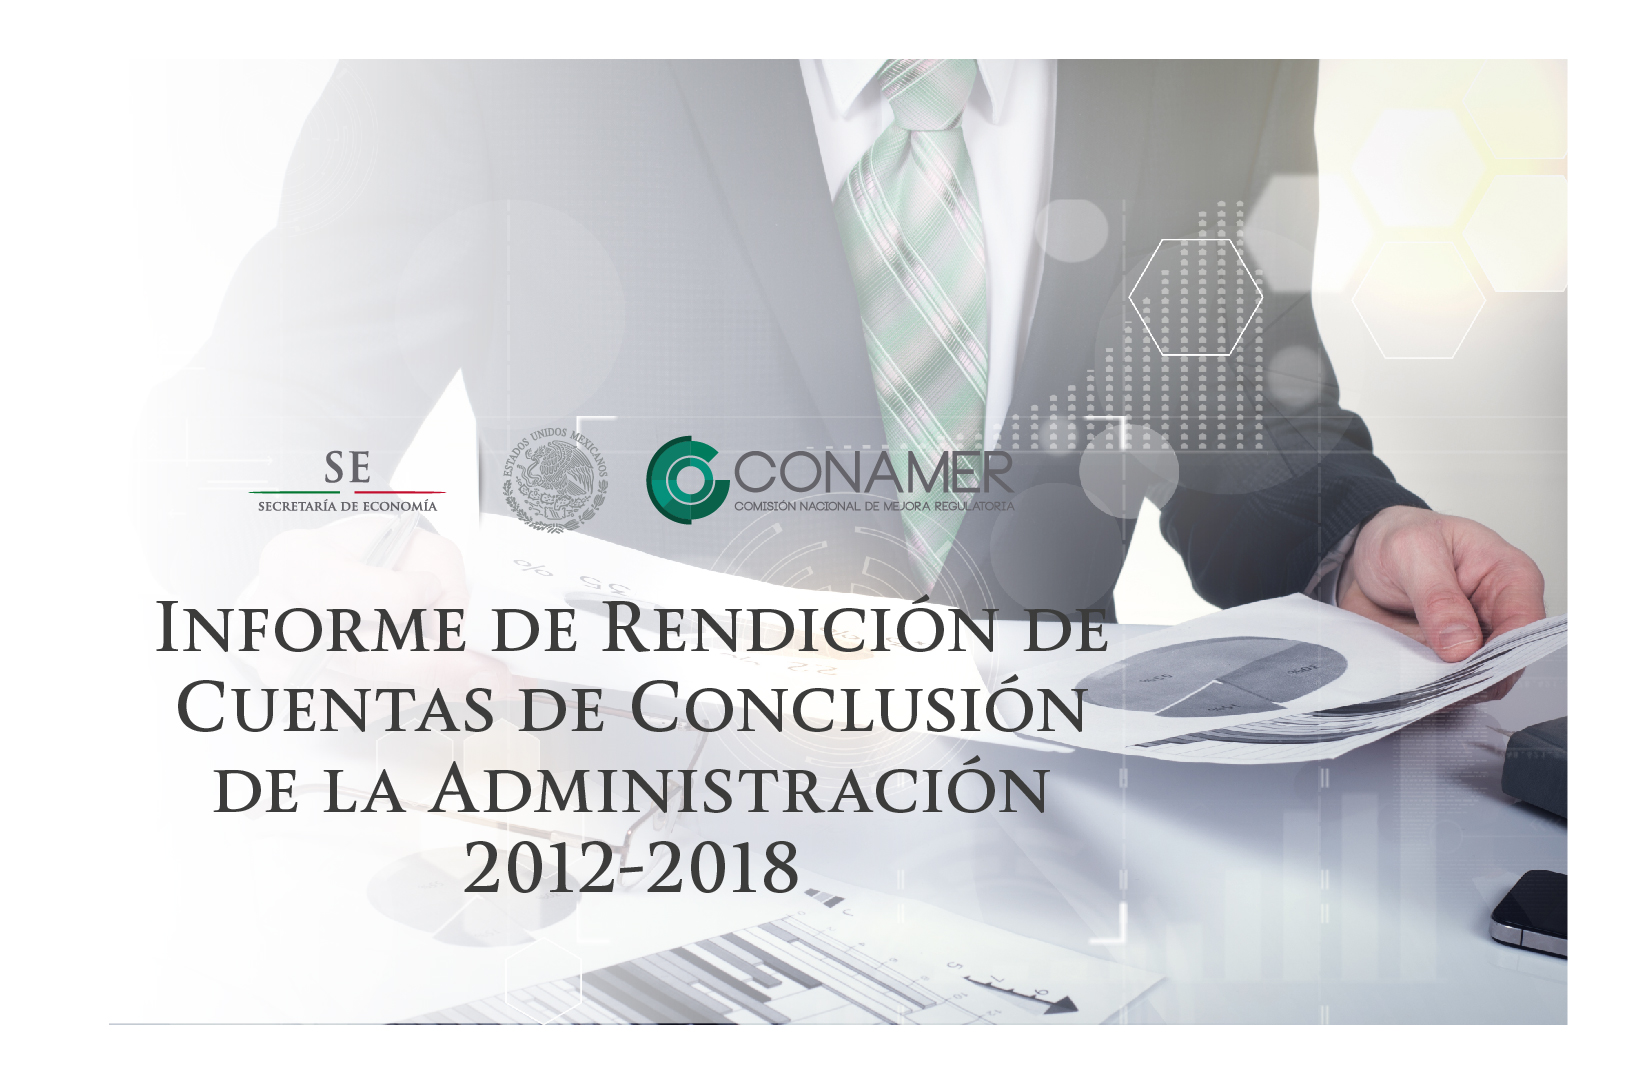 Informe de rendición de cuentas de conclusión de la Administración 2012-2018